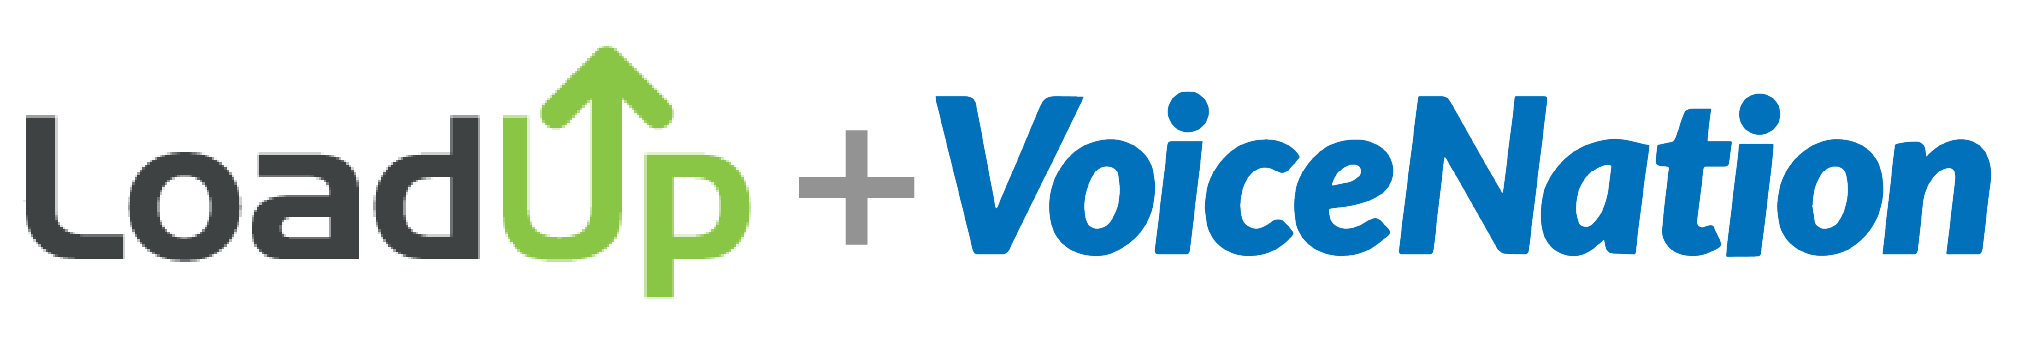 LoadUp + VoiceNation Partnership